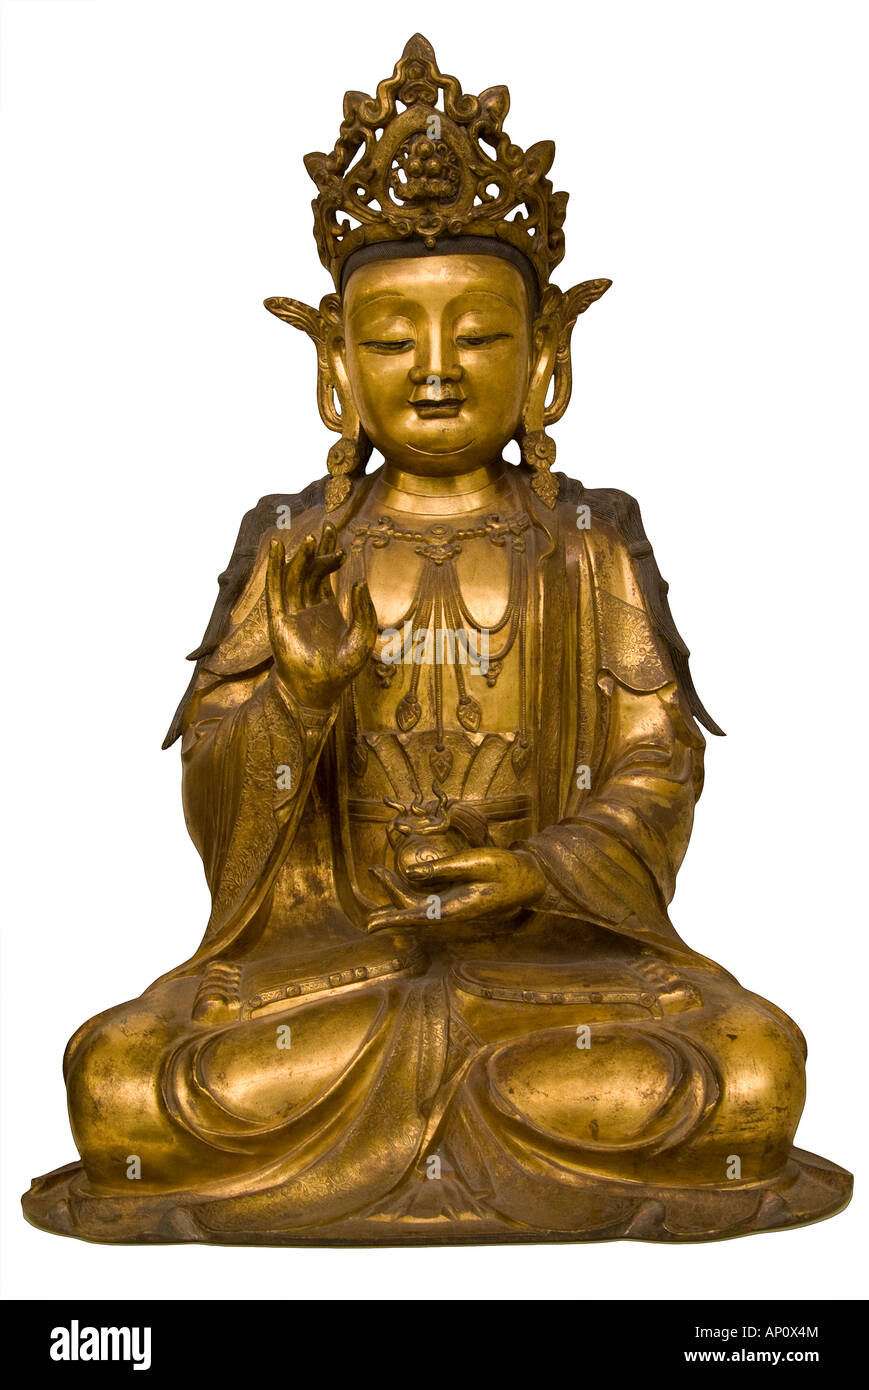 Amitayus bouddha en bronze doré de la vie éternelle assis habillé de riches vêtements bijoux de bodhisattva holding petit pot contenant de l'eau Banque D'Images